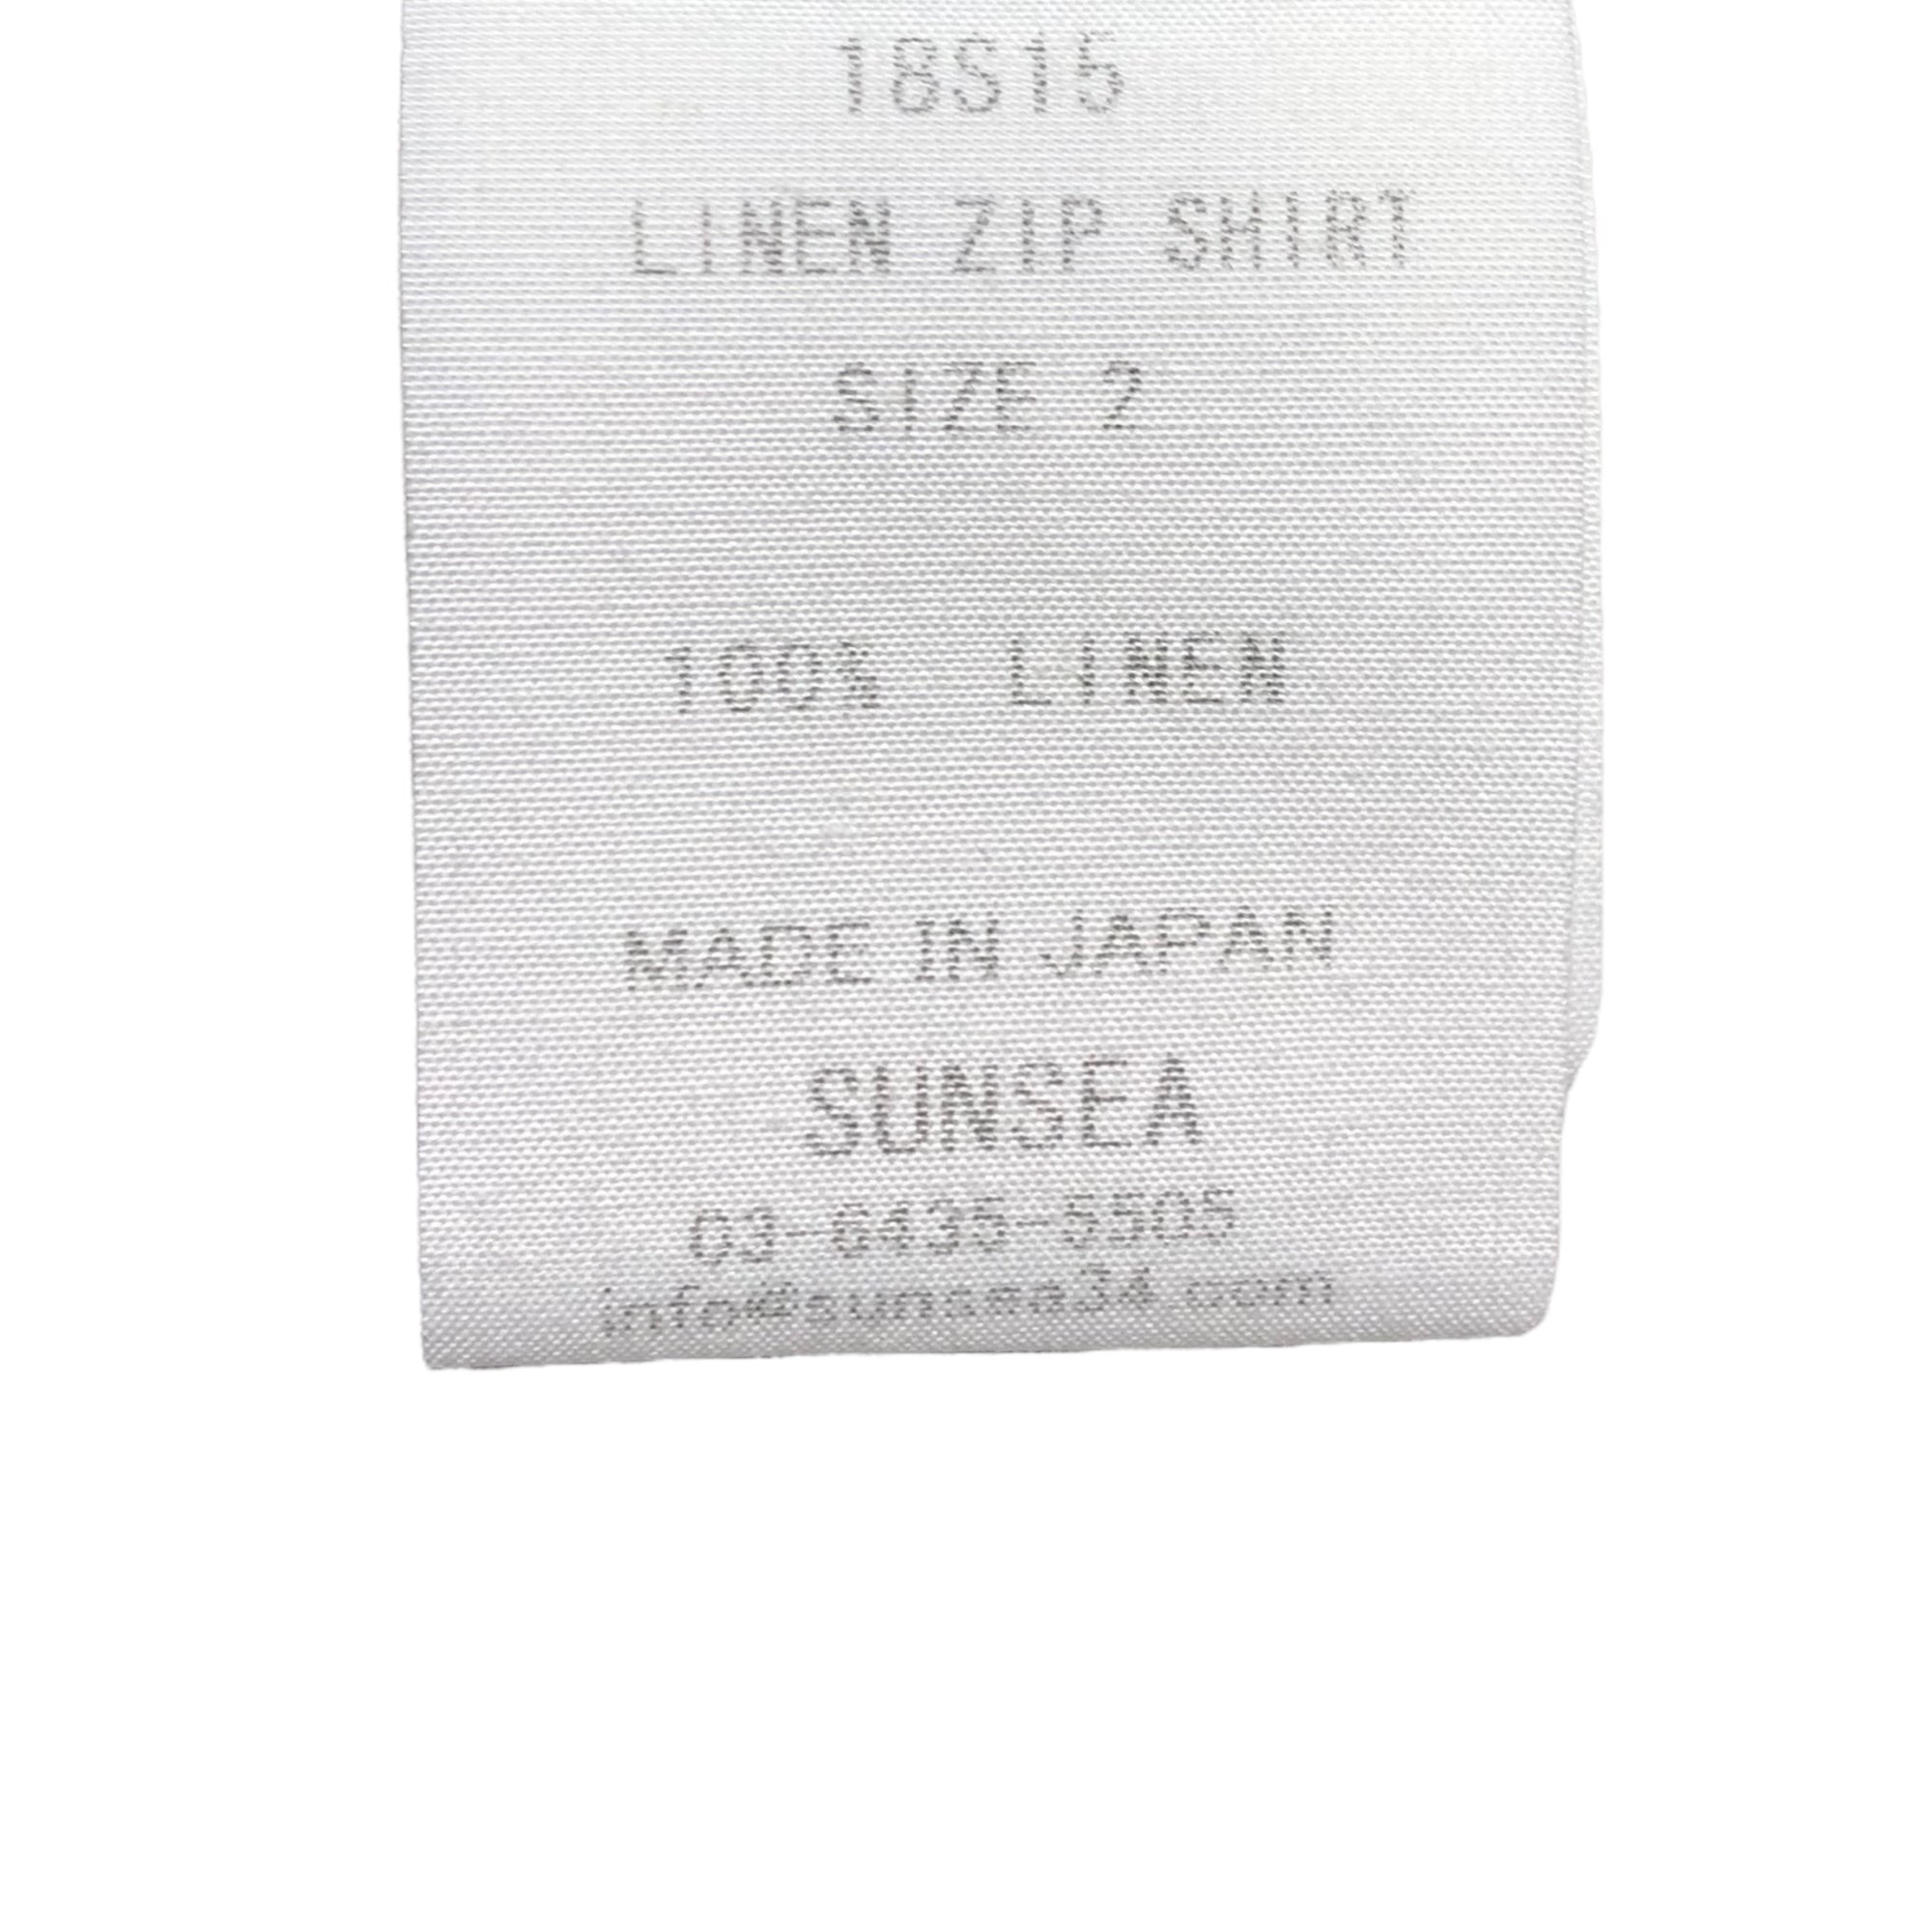 SUNSEA(サンシー) 18SS Linen Zip Shirt 2 リネン ジップシャツ 18S15 2(M) ライトブルー